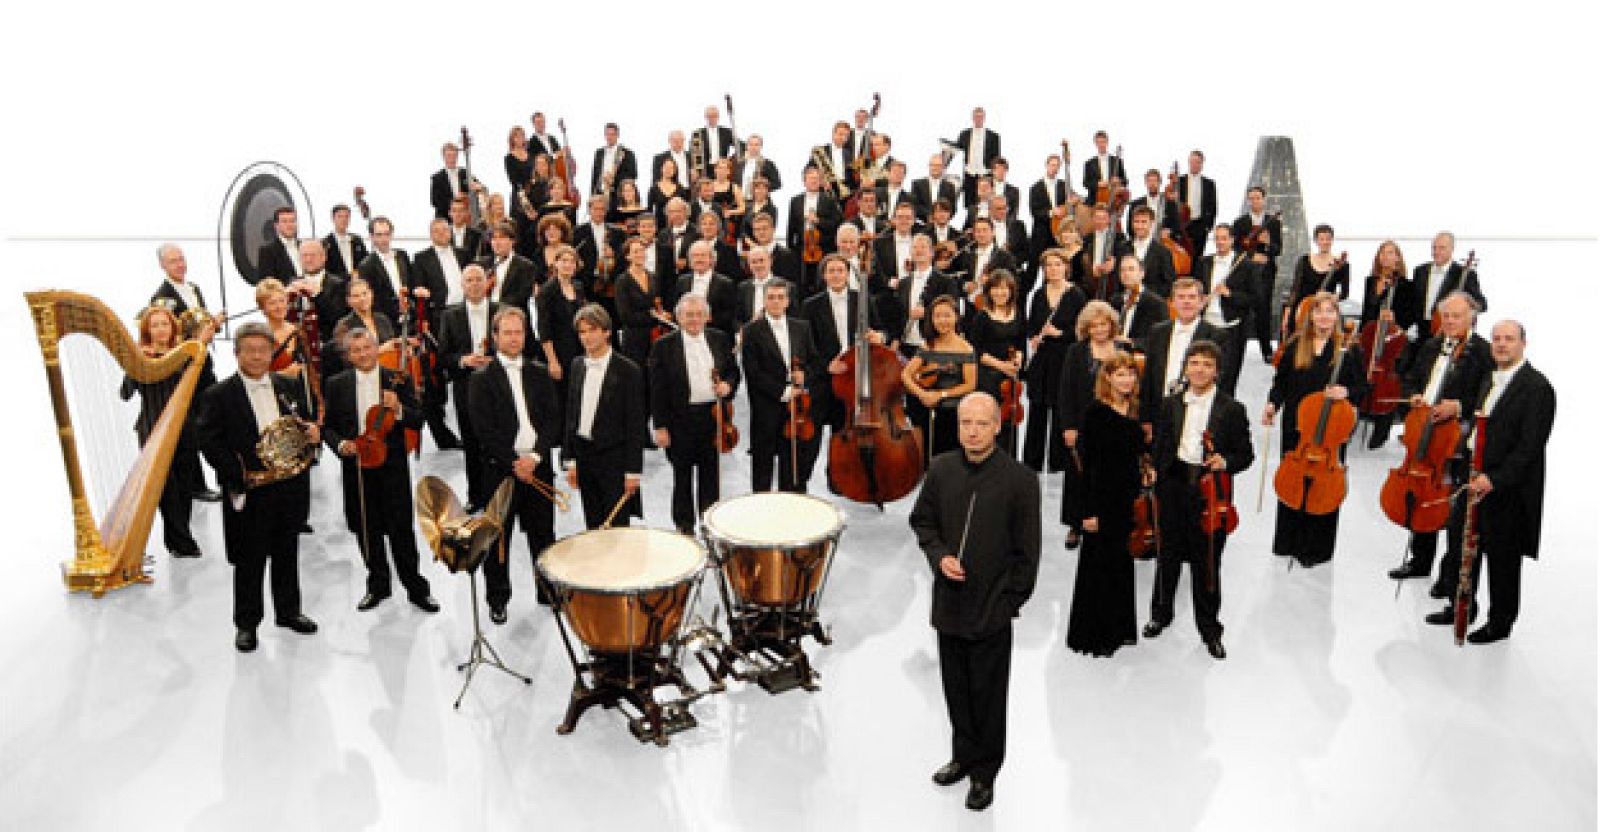 La Orquesta Sinfónica de la Radio de Frankfurt interpreta este martes la Séptima Sinfonía de Mahler en el Festival Internacional de Música de Santander.